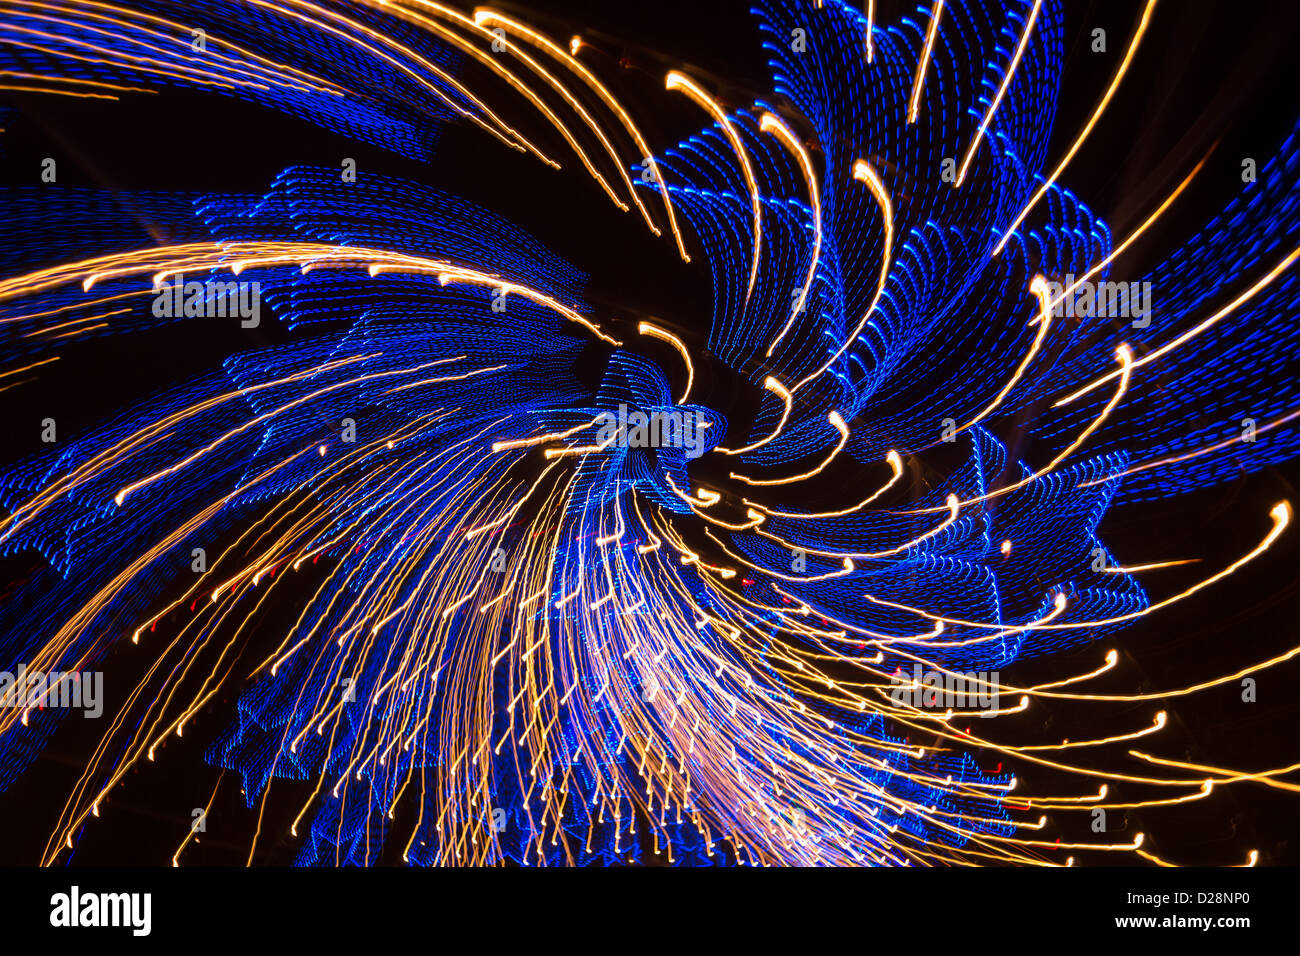 Les feux de piste Austin - lampes en forme d'étoile bleu motif spin Banque D'Images